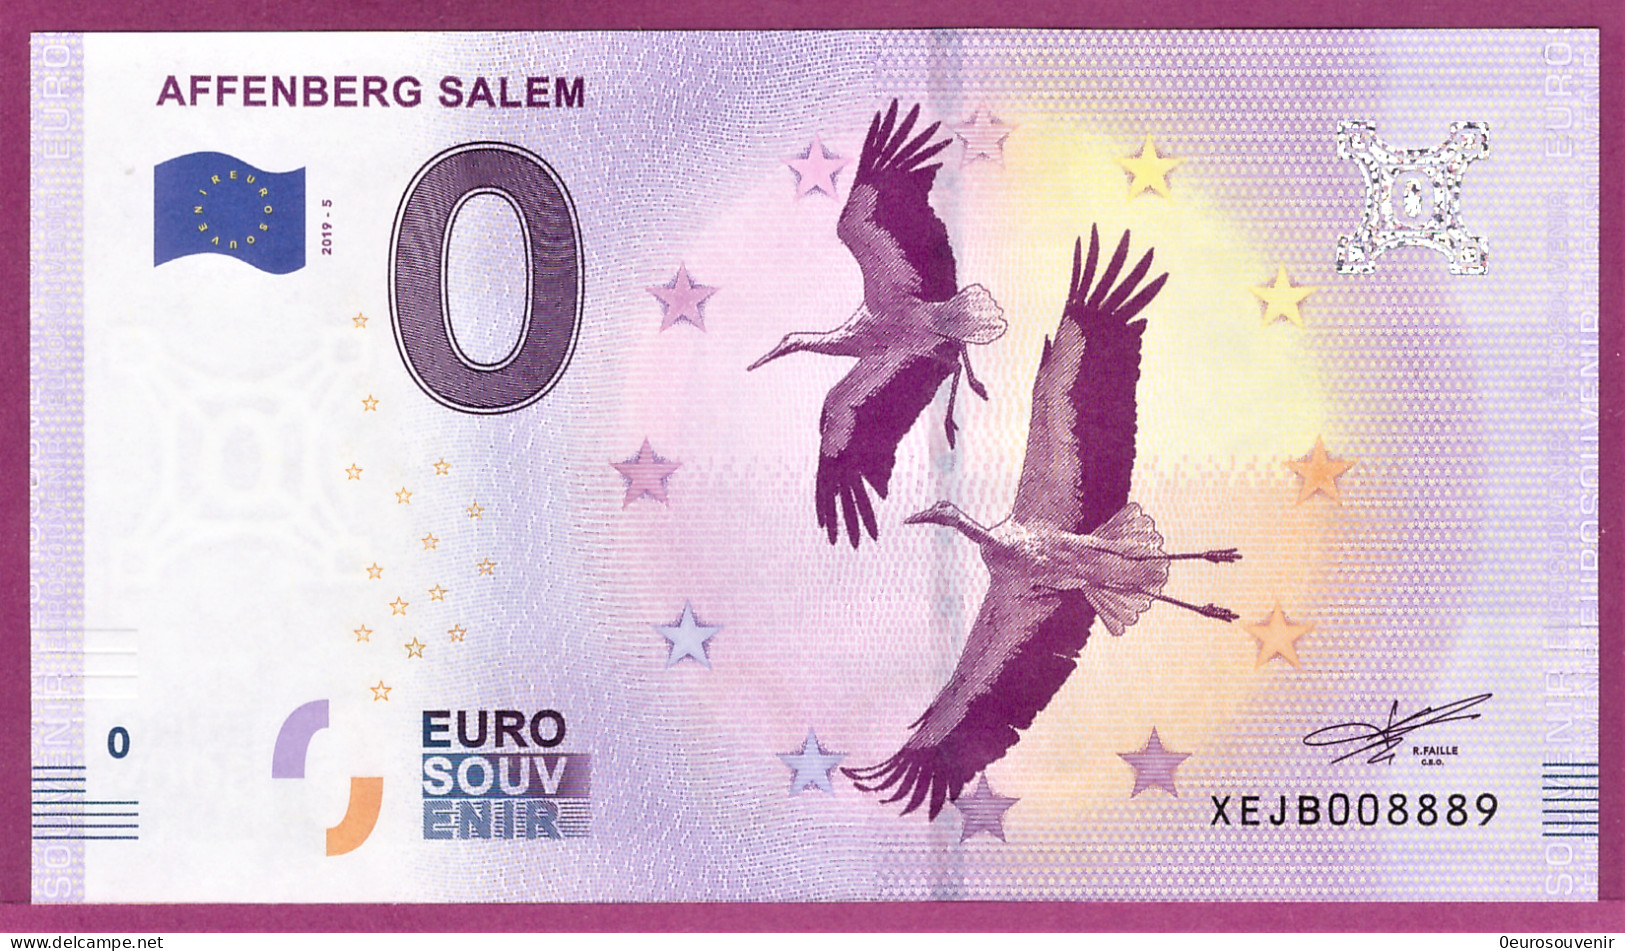 0-Euro XEJB 2019-5 AFFENBERG SALEM - STÖRCHE - Privatentwürfe